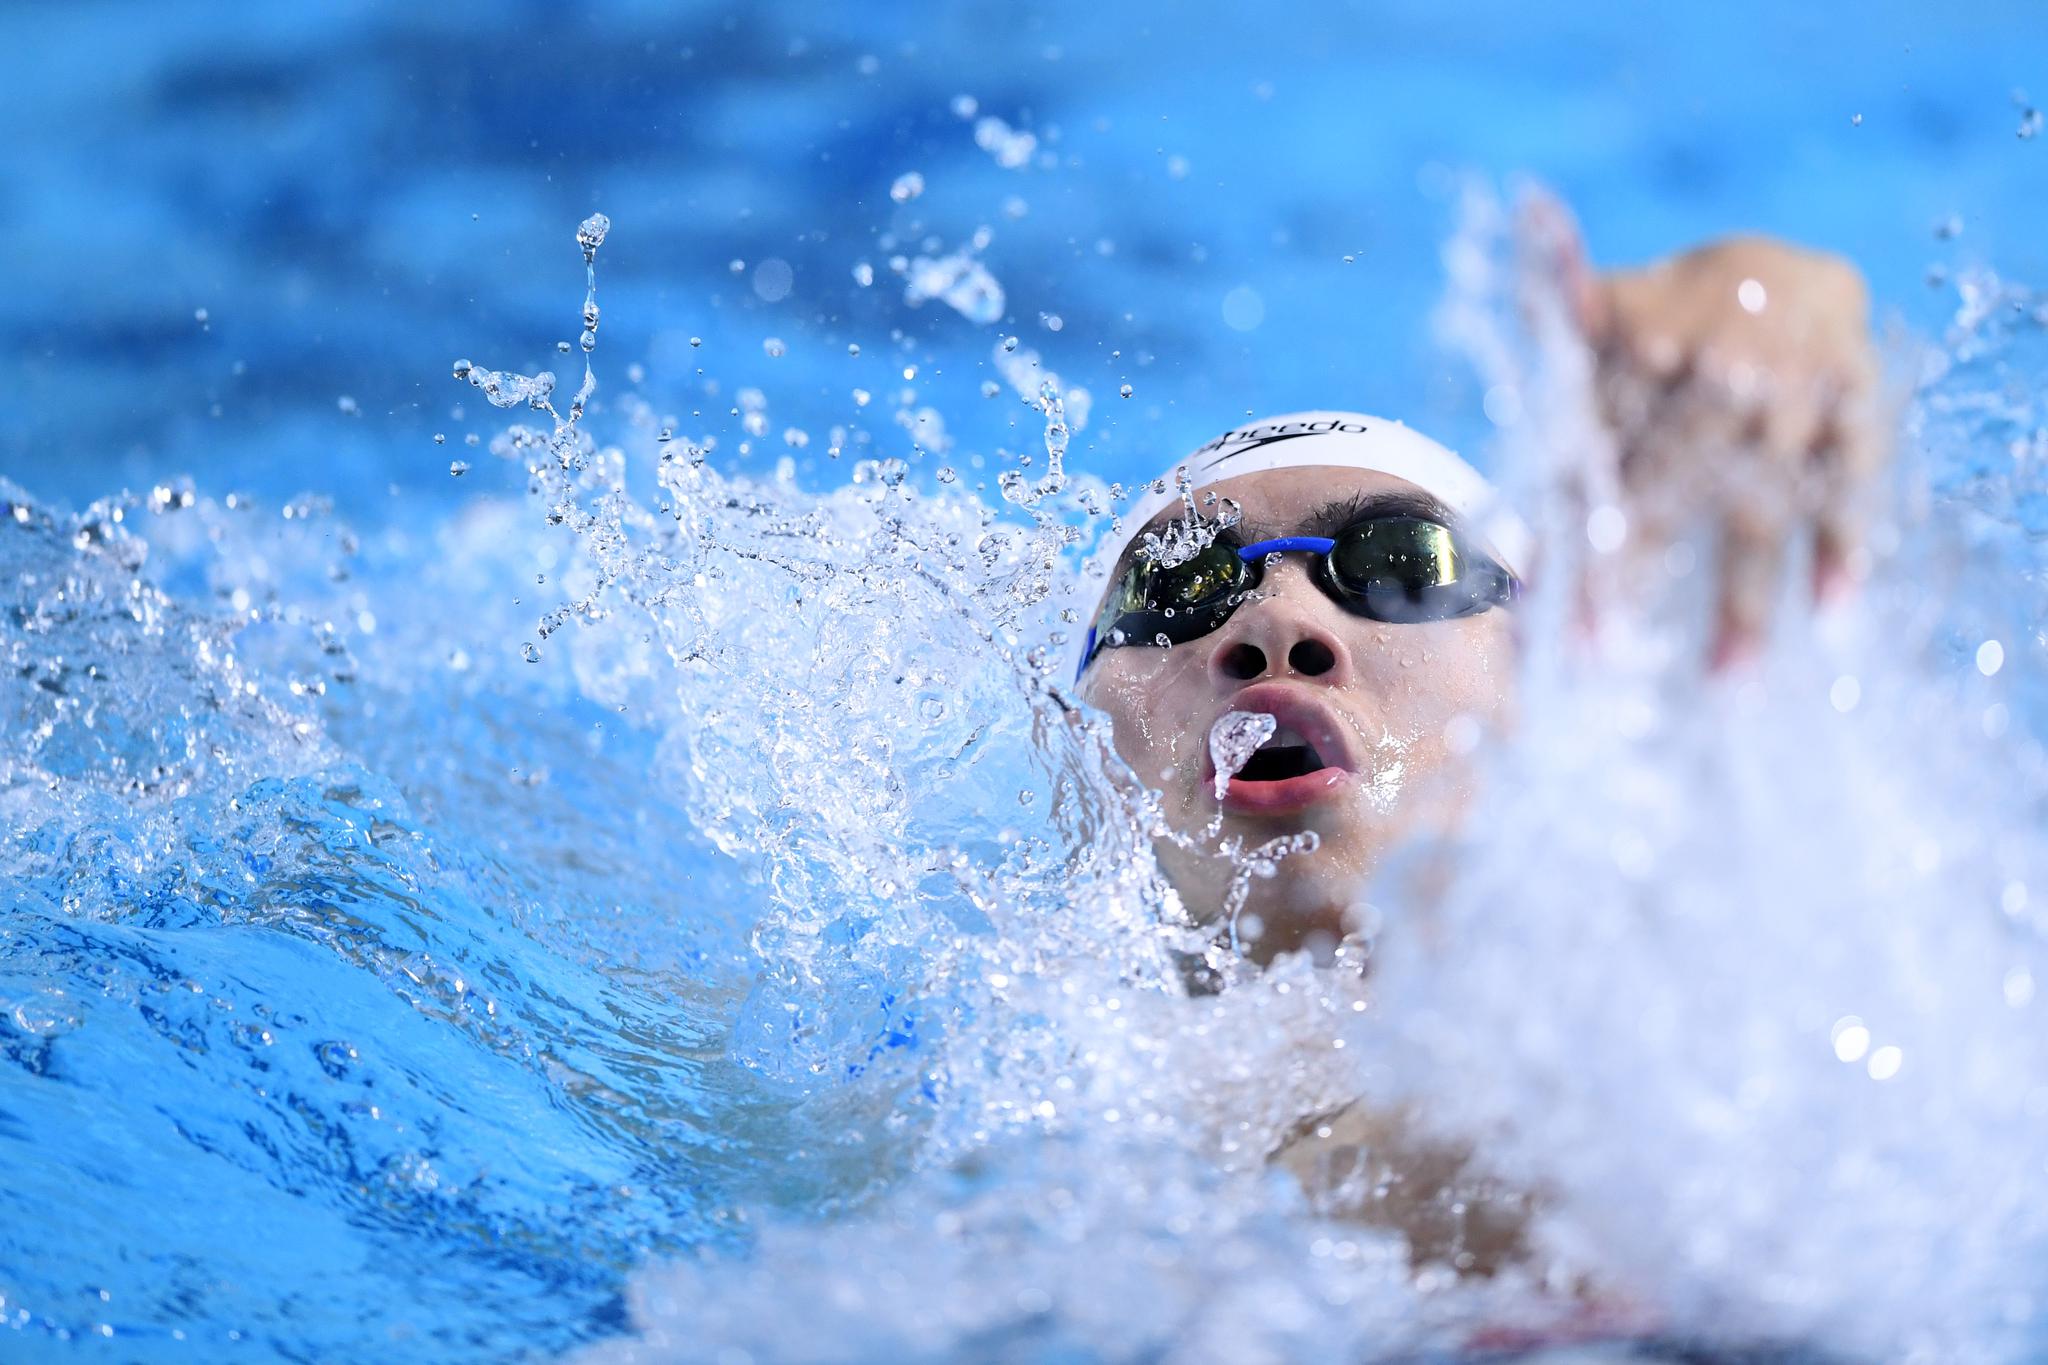 二青会游泳:王简嘉禾200米自由泳摘铜  李冰洁获第三块银牌